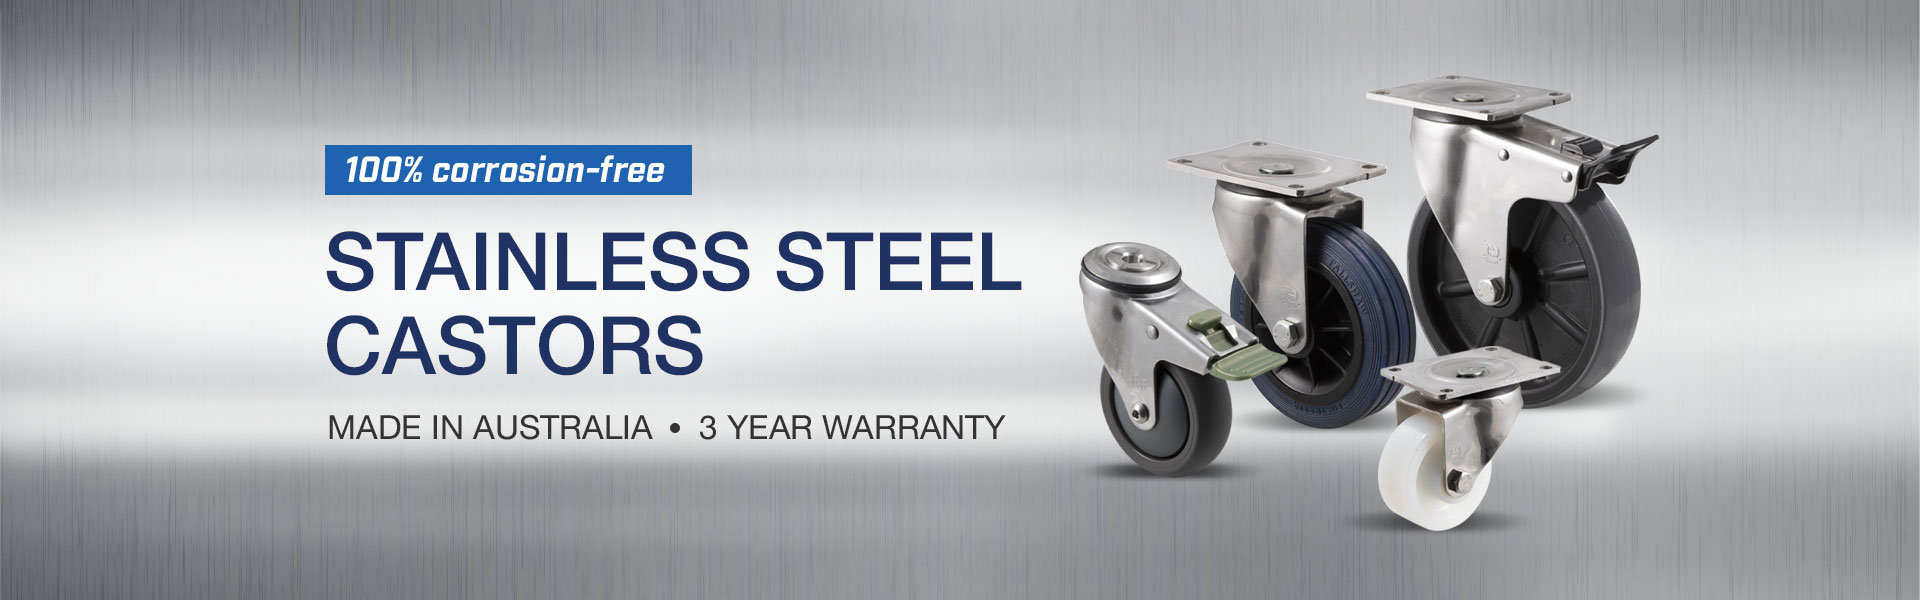 Stainless steel castors - Australian-made